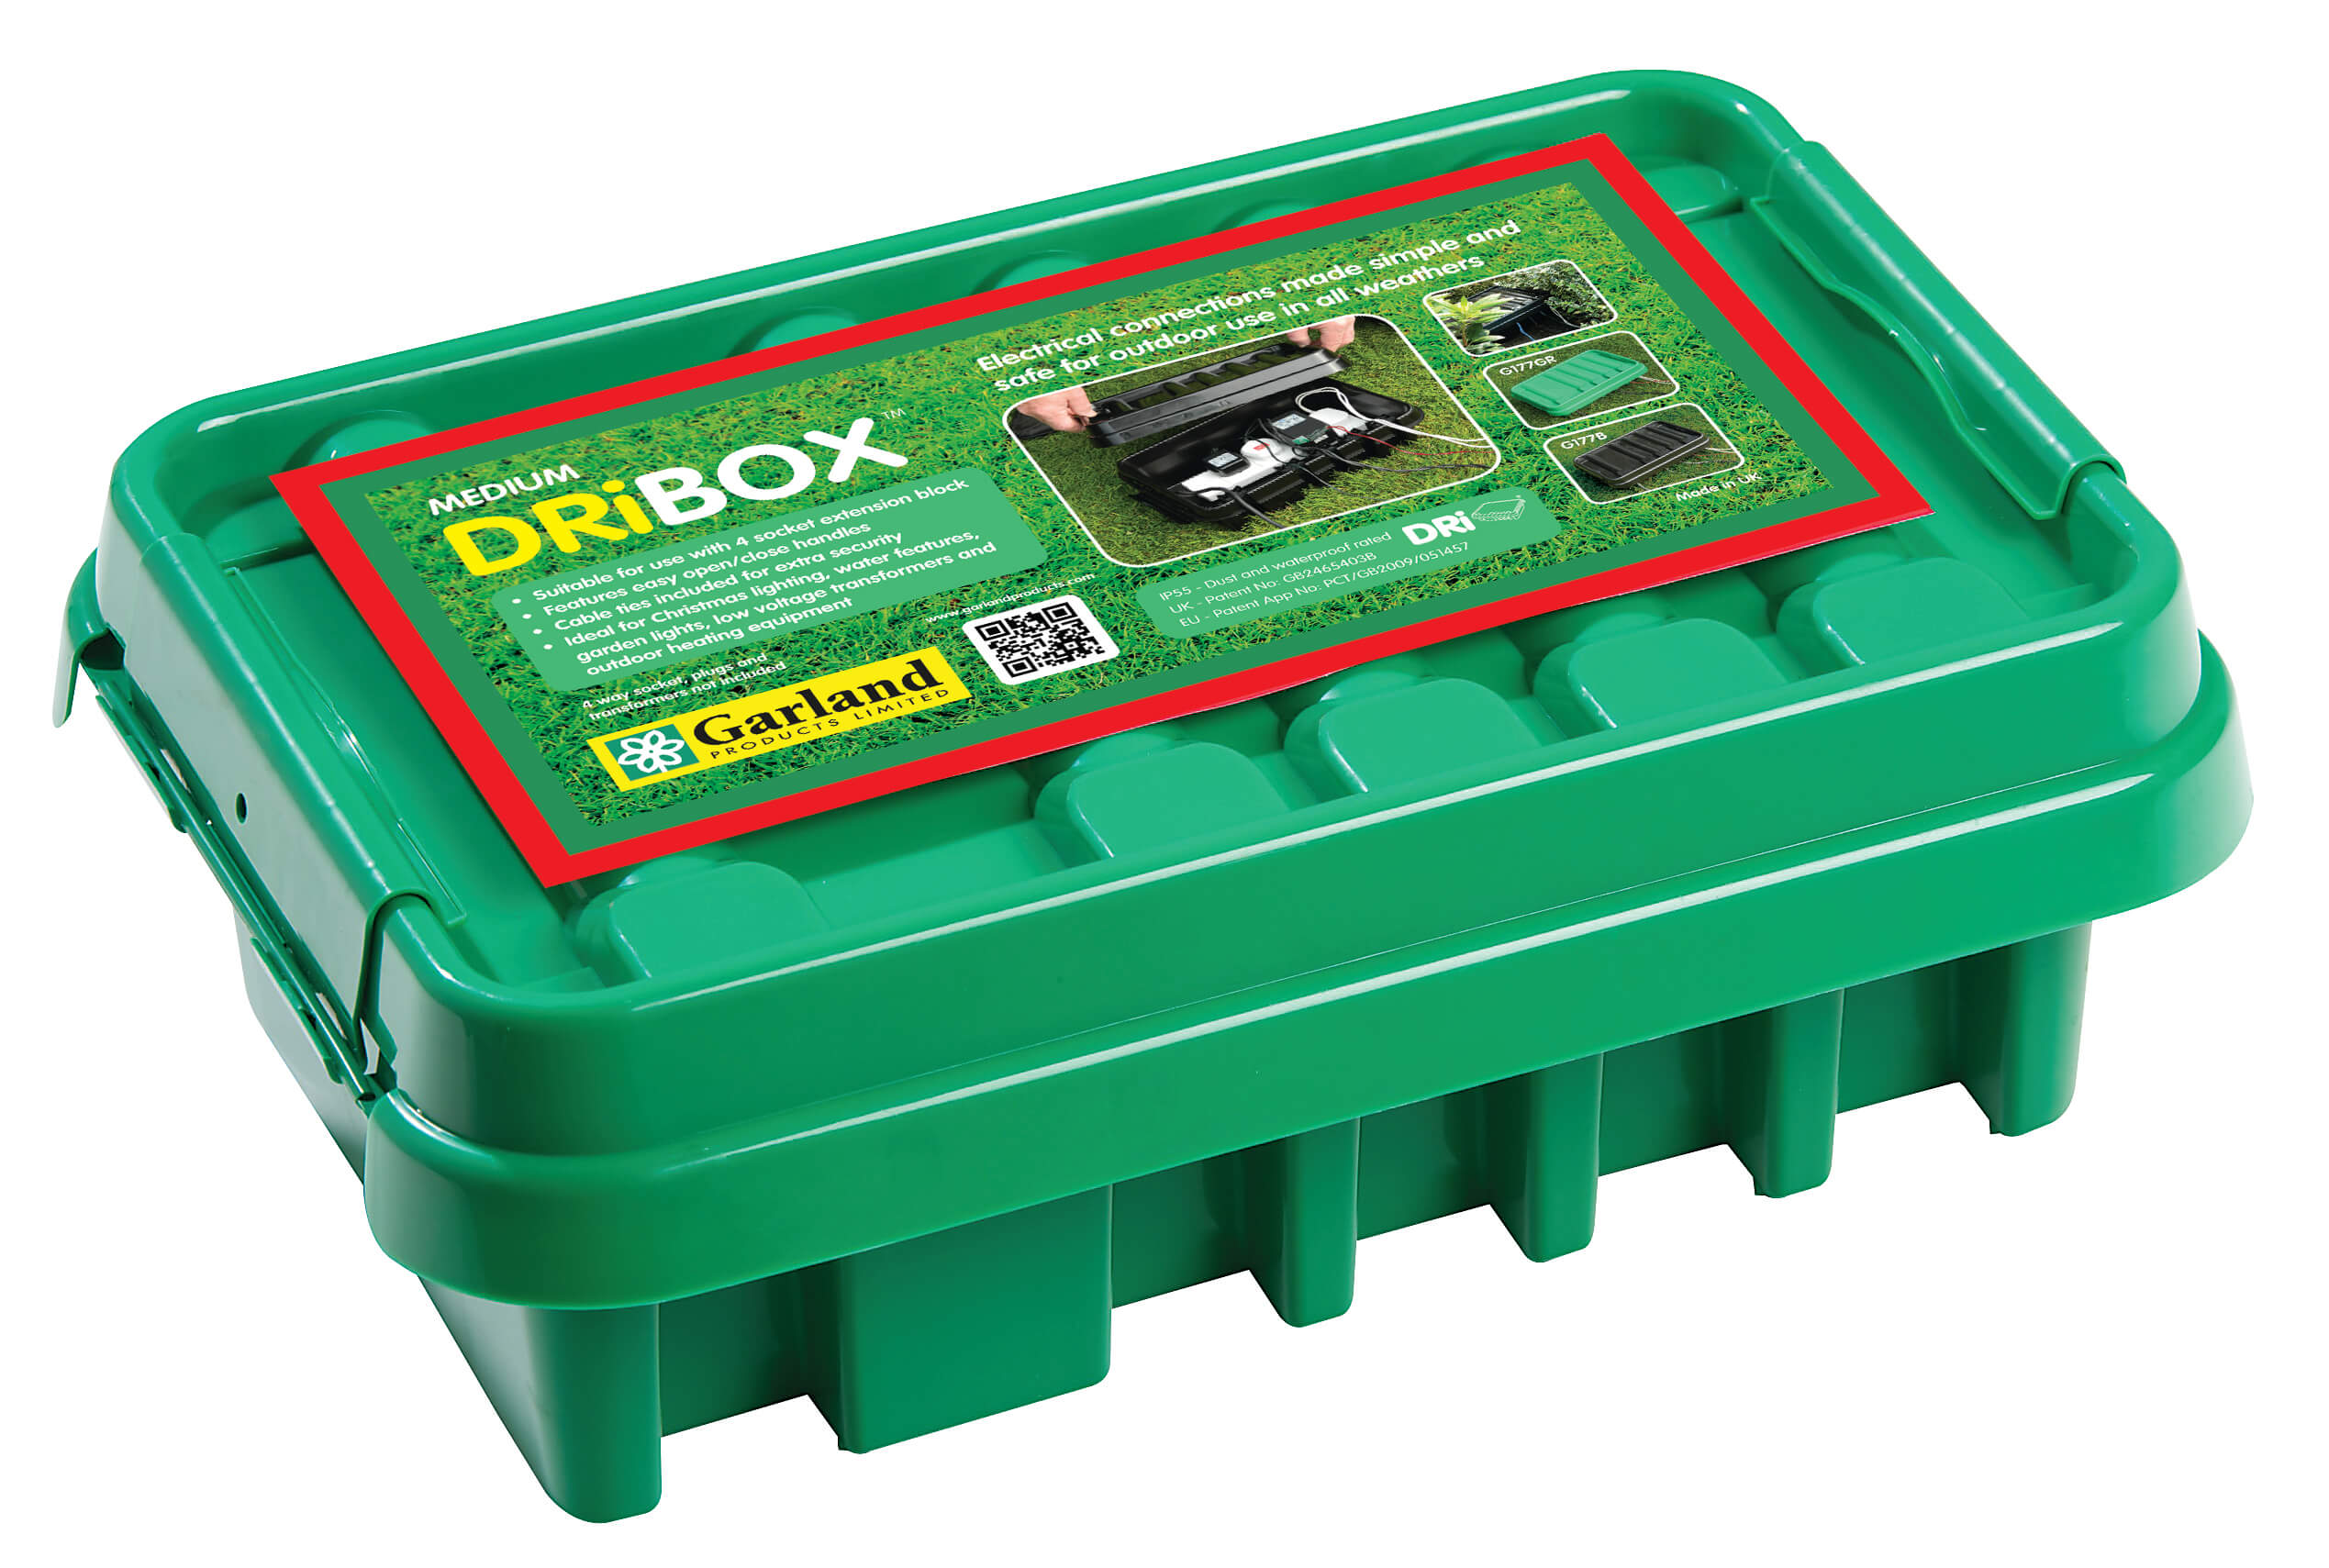 Dribox kabelverdeelbox tuin Large